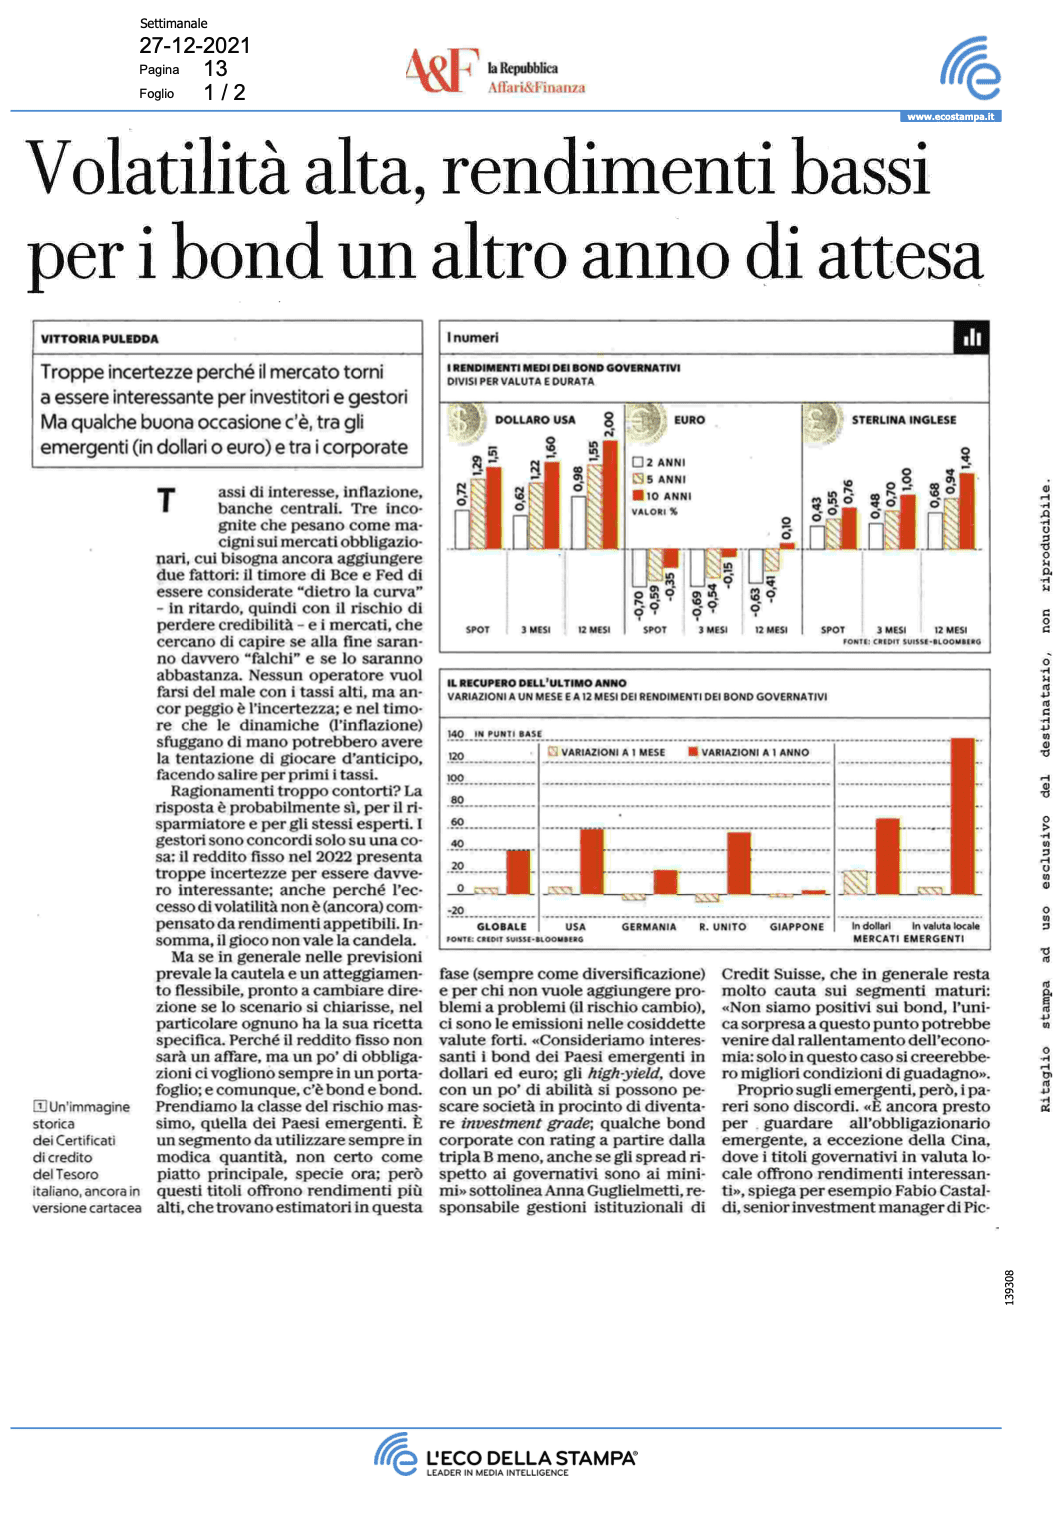 La Repubblica, Affari&Finanza: ‘Volatilità alta, rendimenti bassi per i bond un altro anno di attesa’, Includes Comment by Redhedge CEO, Andrea Seminara